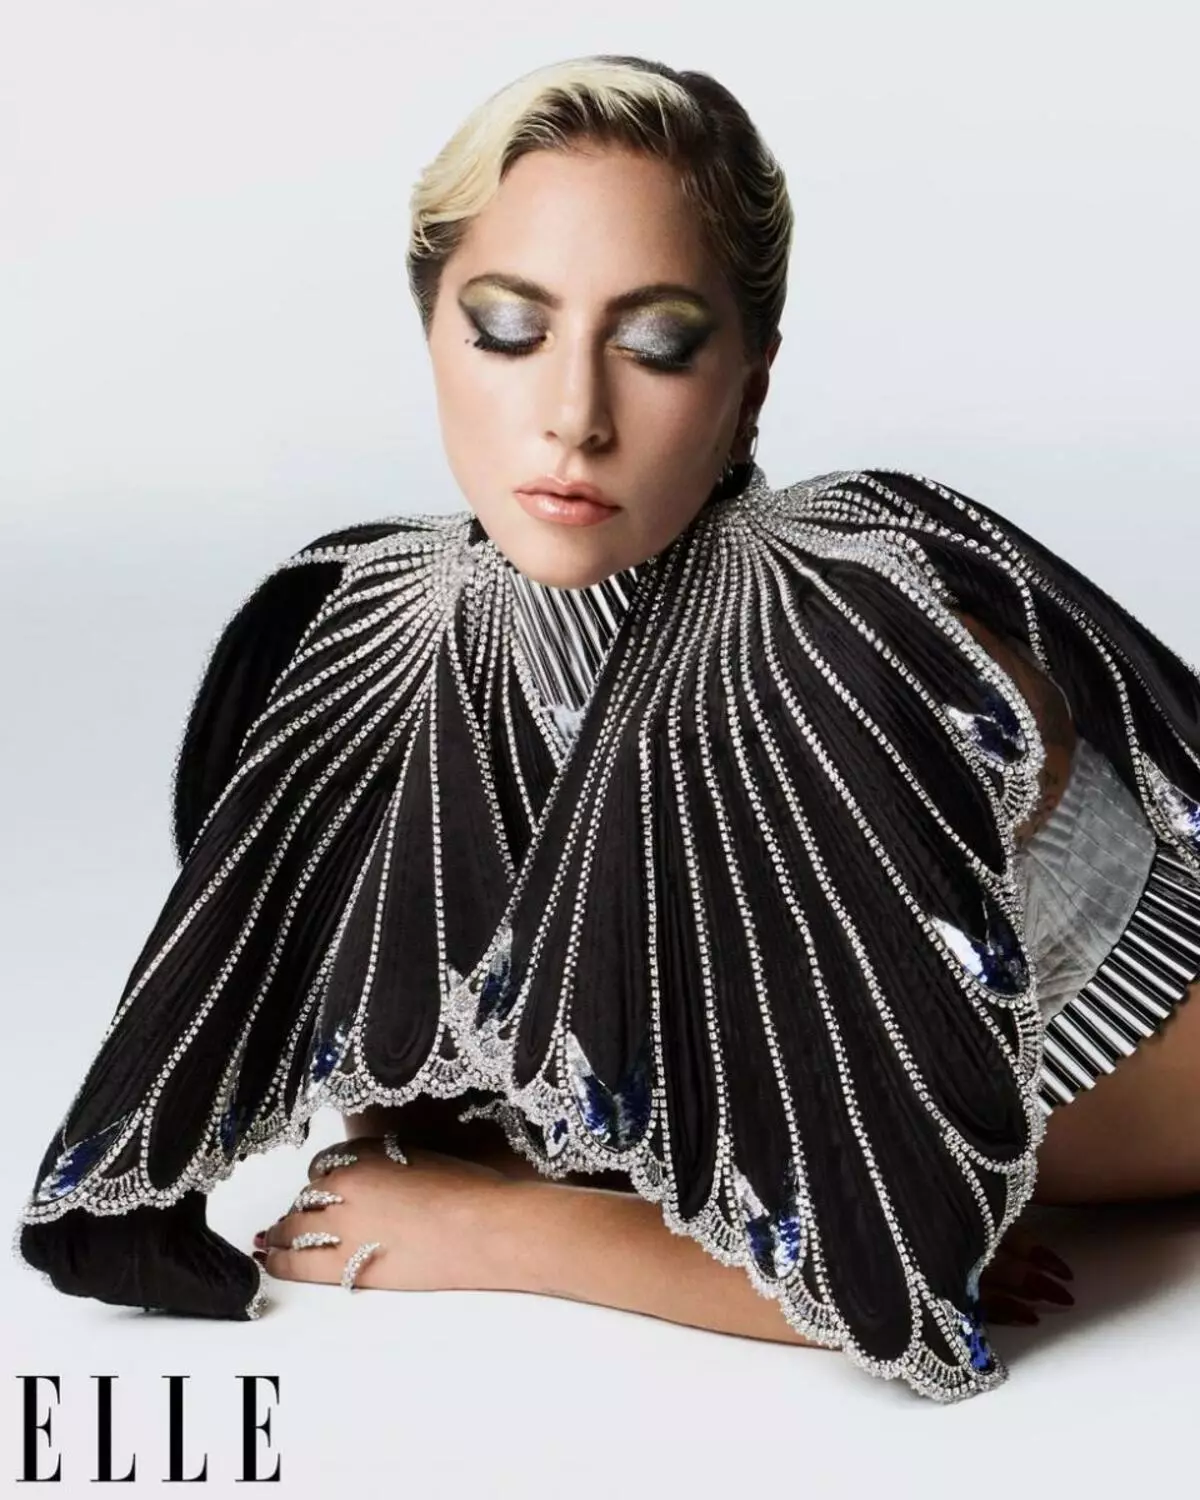 Lady Gaga faaigoa tusitala e le au tusitala, teena Roma Roma ma Bradley Cooper 29069_2